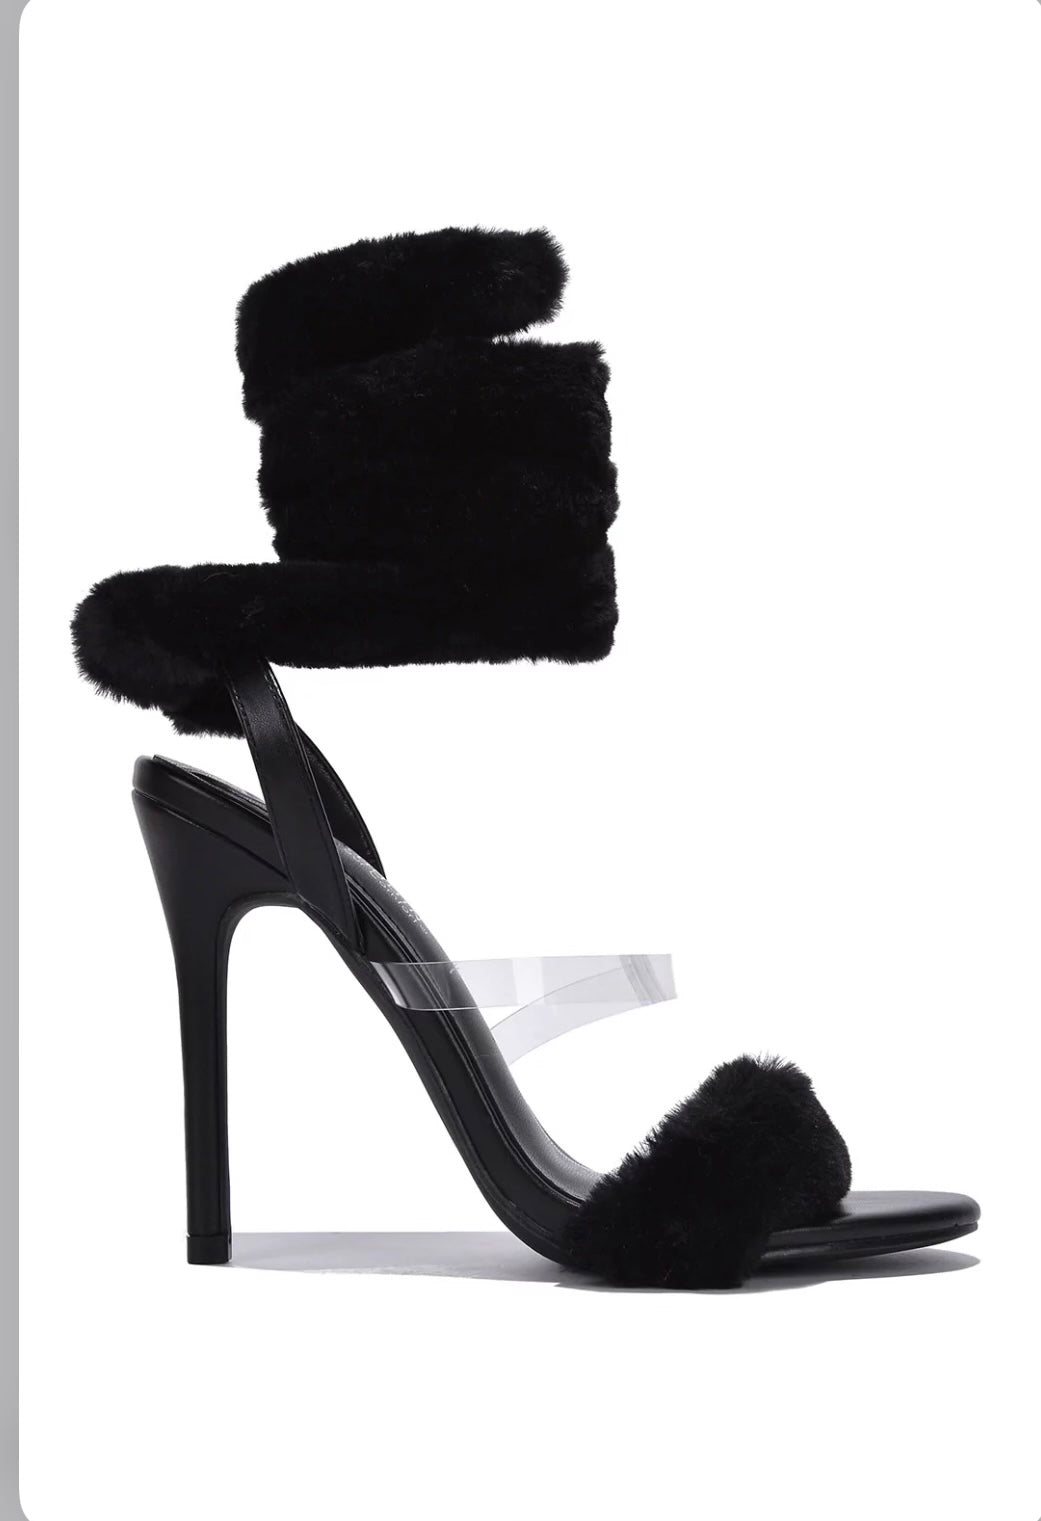 “Lambo” fuzzy heels